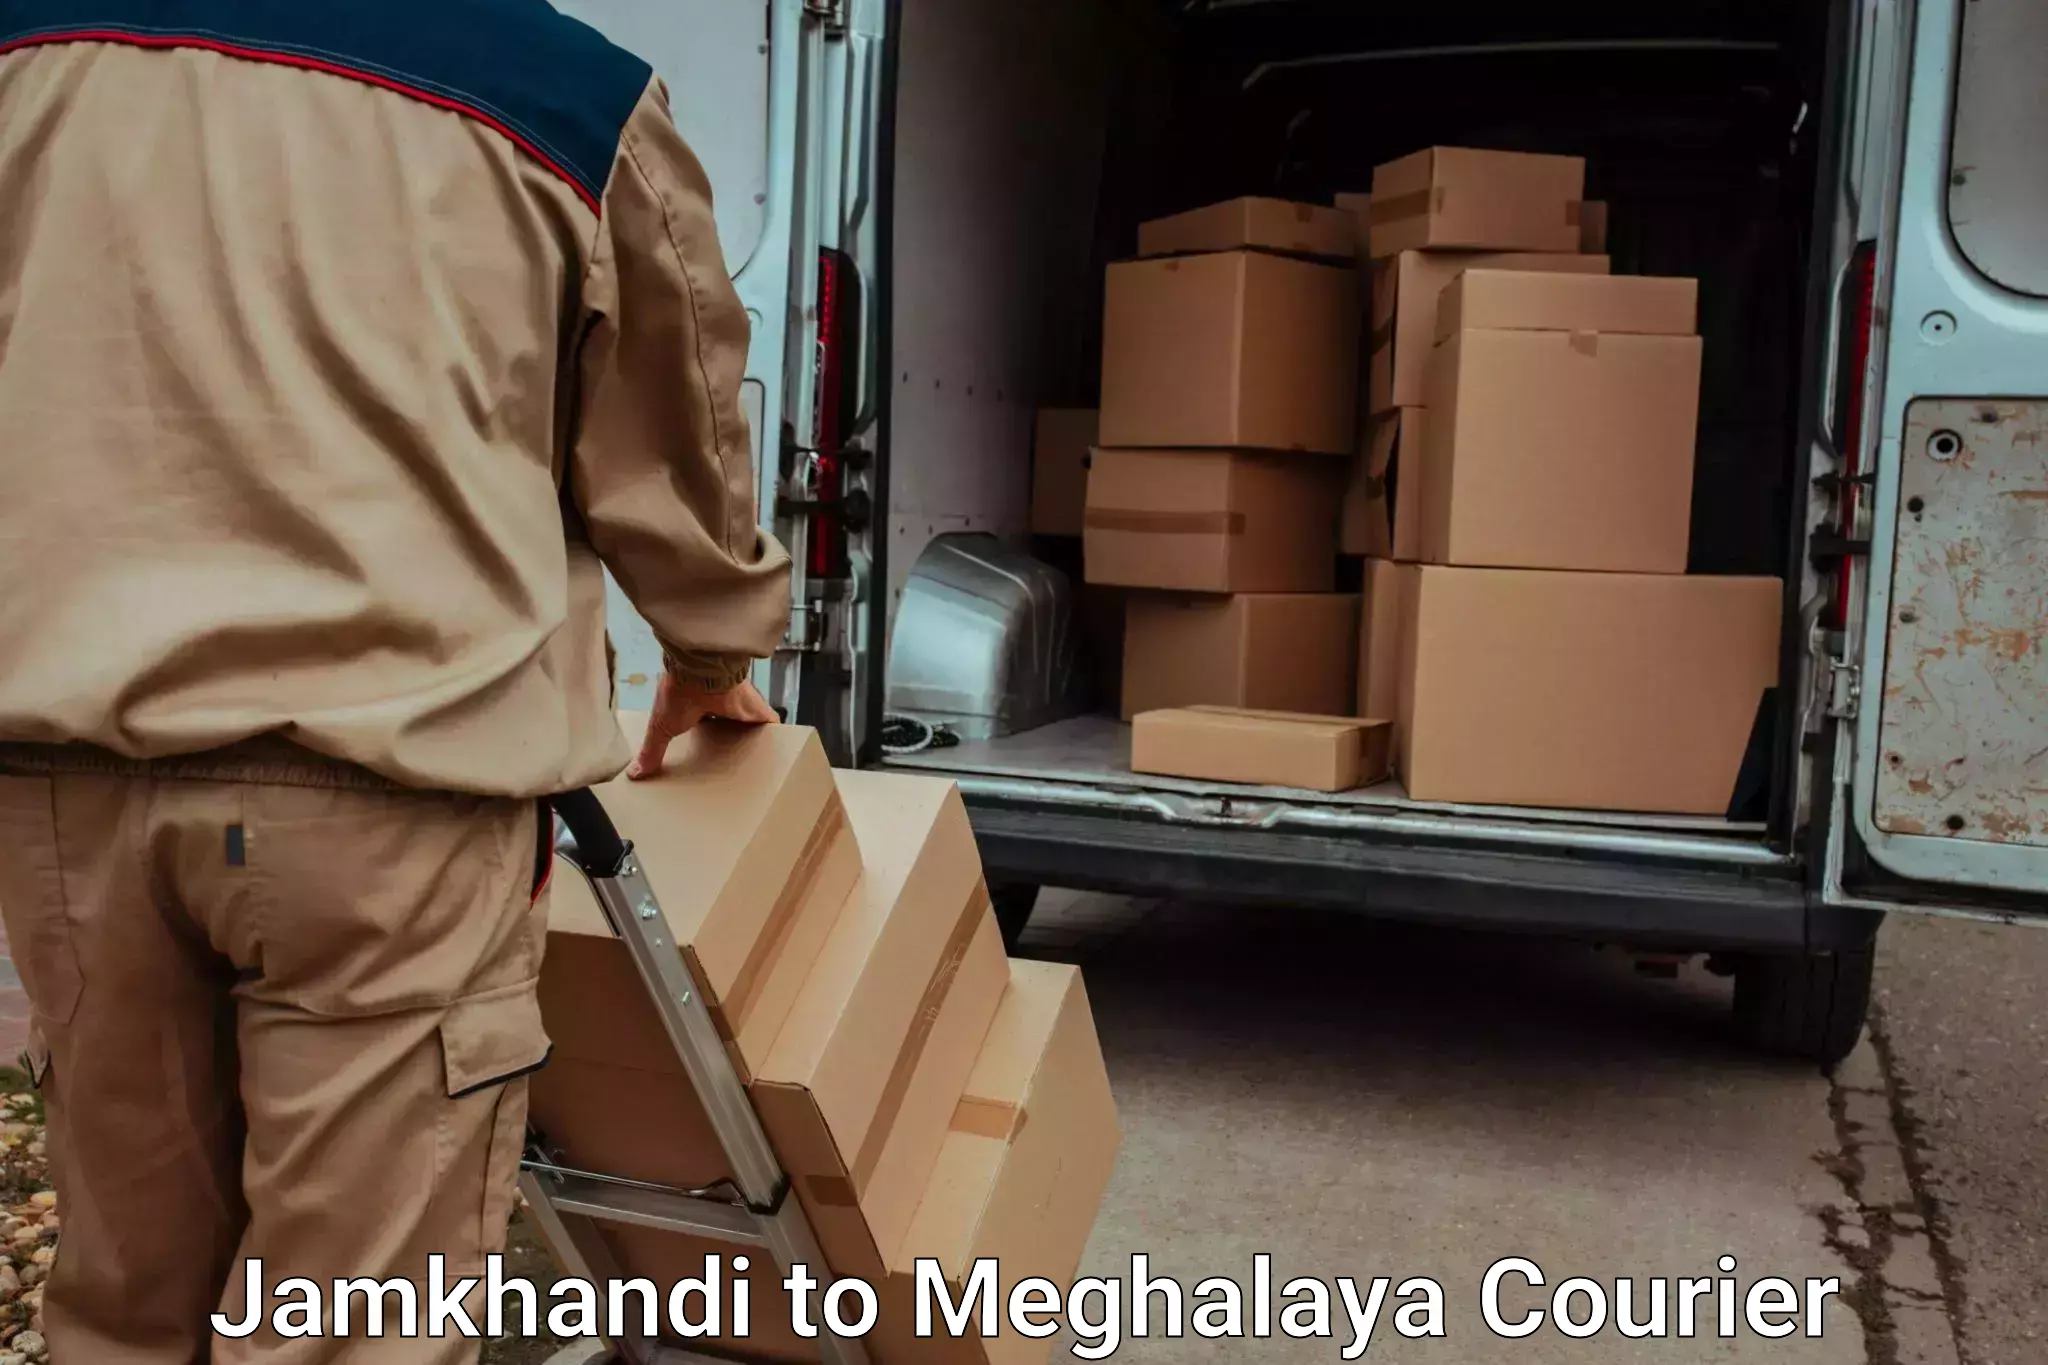 Professional moving assistance Jamkhandi to Meghalaya